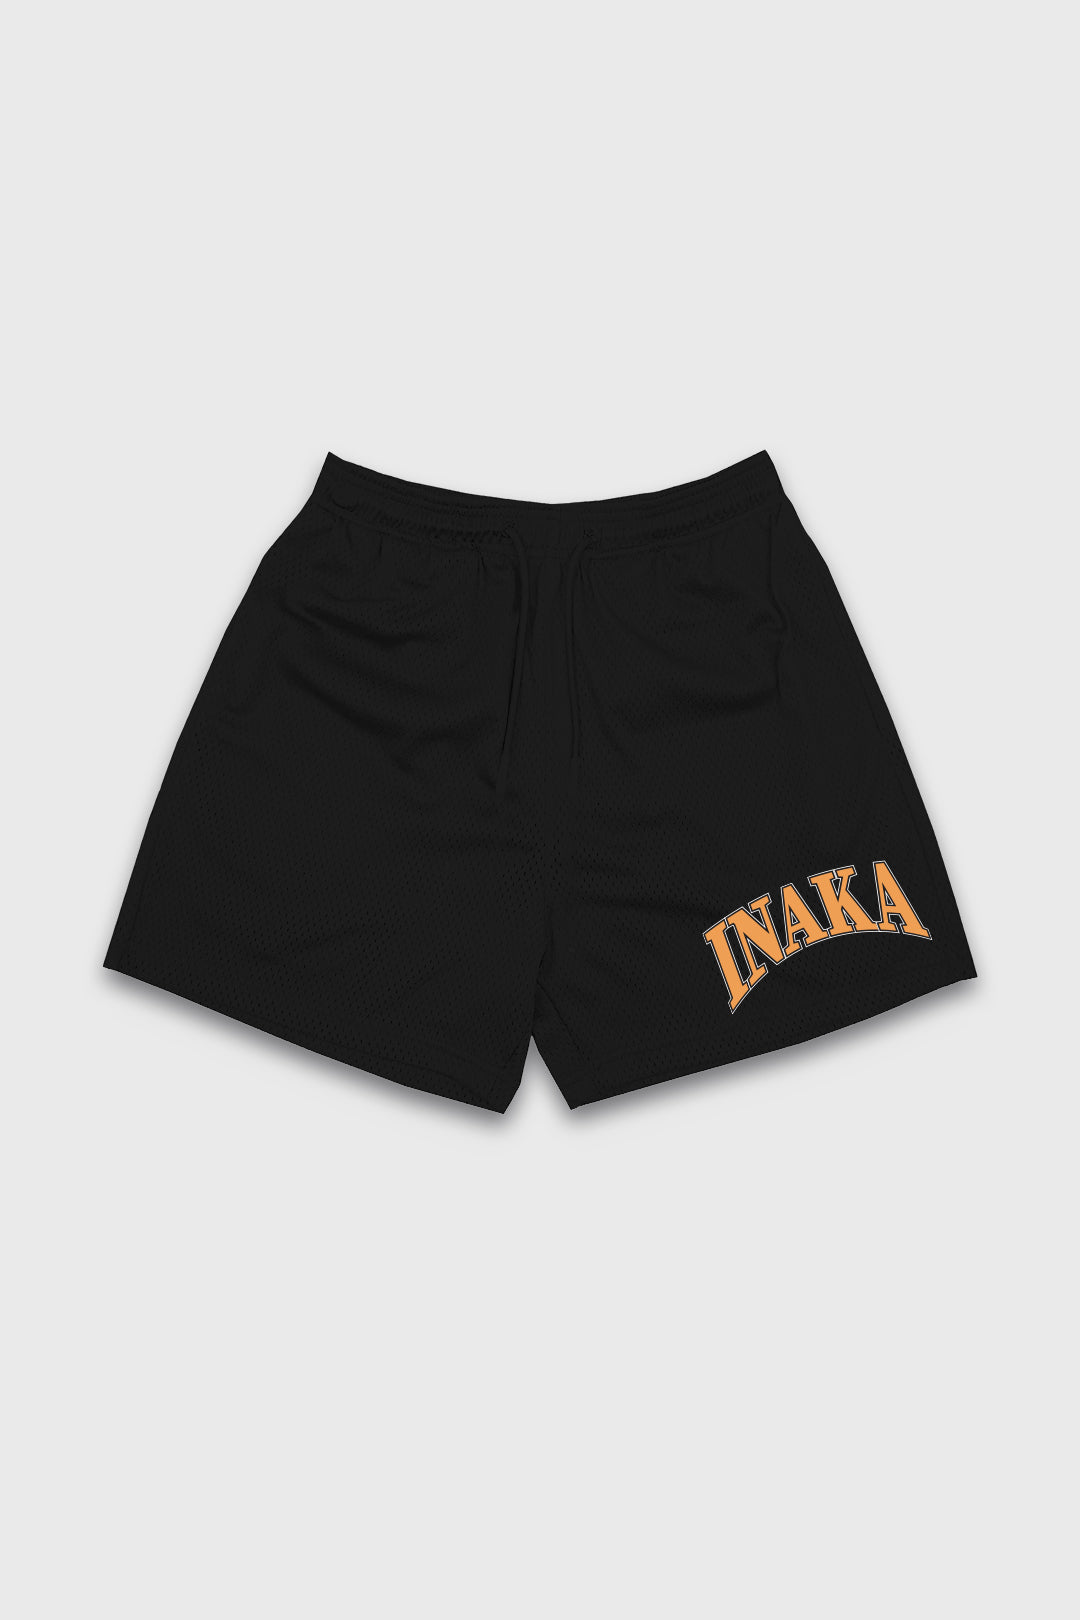 Men's Emblem Shorts - Black